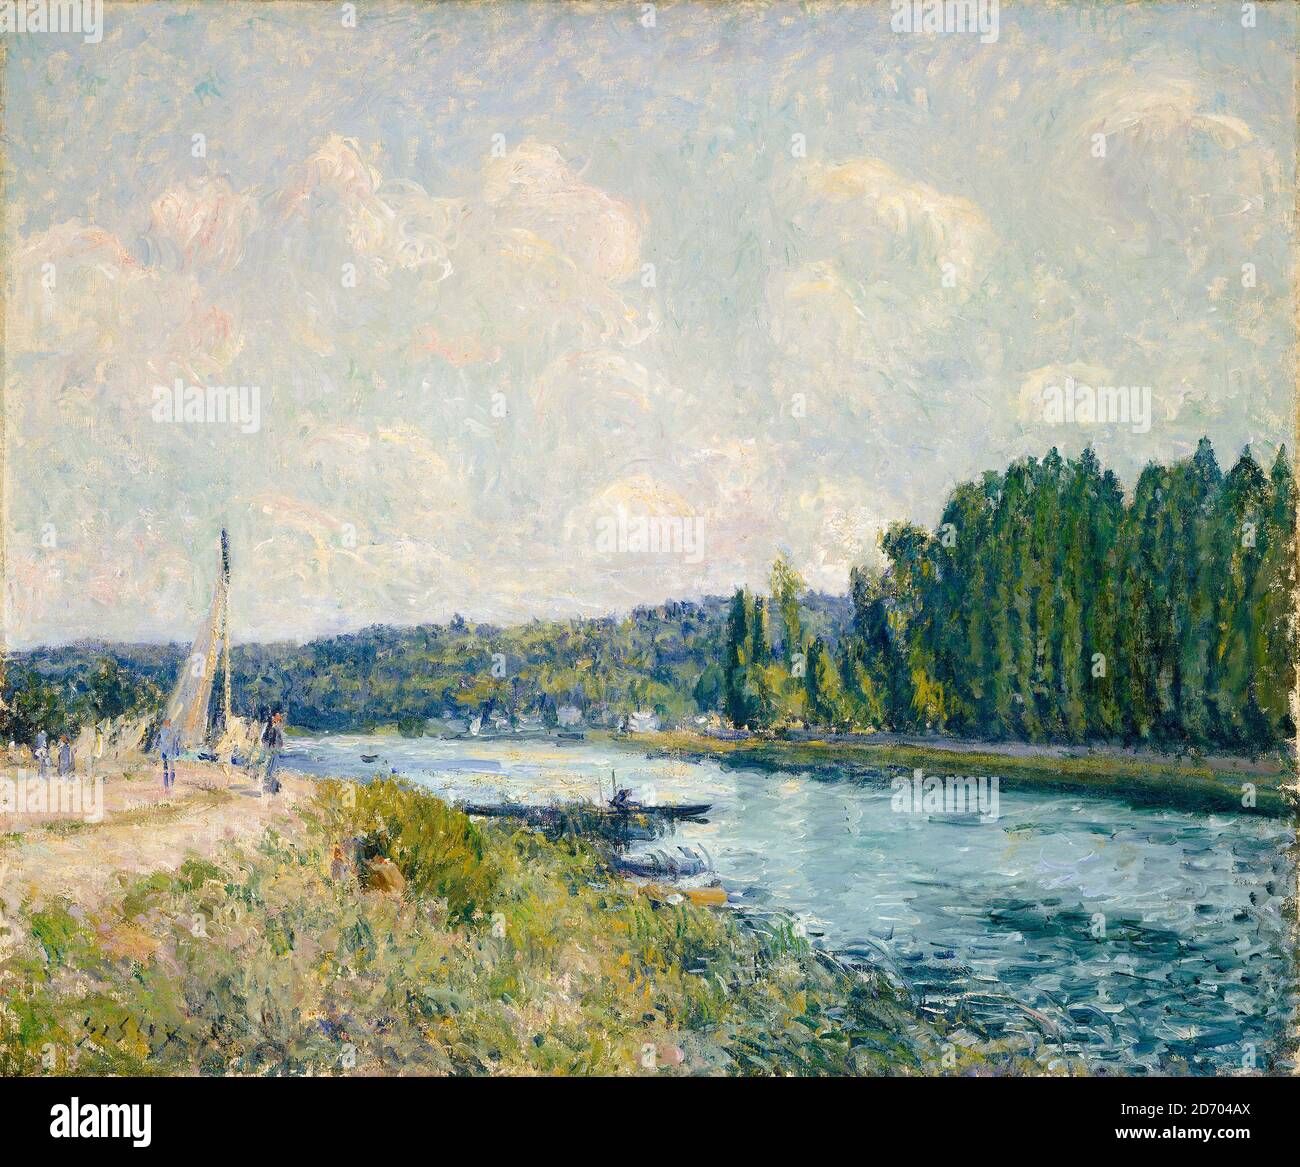 Alfred Sisley, die Ufer der Oise, impressionistische Landschaftsmalerei, 1877-1878 Stockfoto